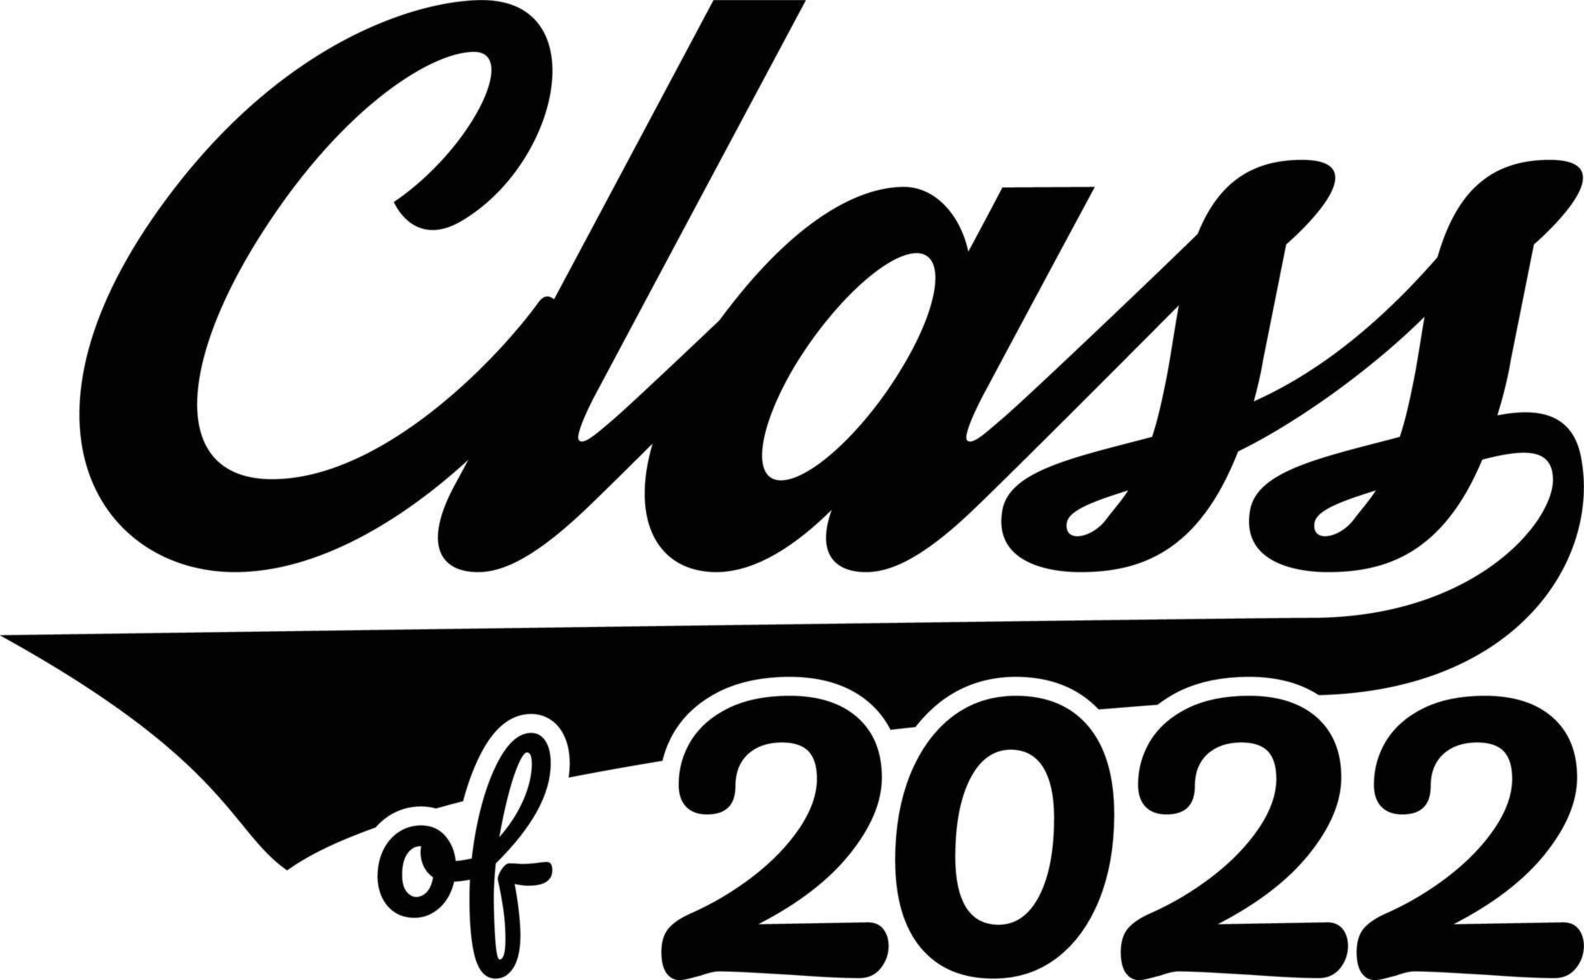 klasse von 2022. abschlussbanner für high school, college-absolvent. Klasse von 2022, um jungen Absolventen zum Abschluss zu gratulieren. vektor